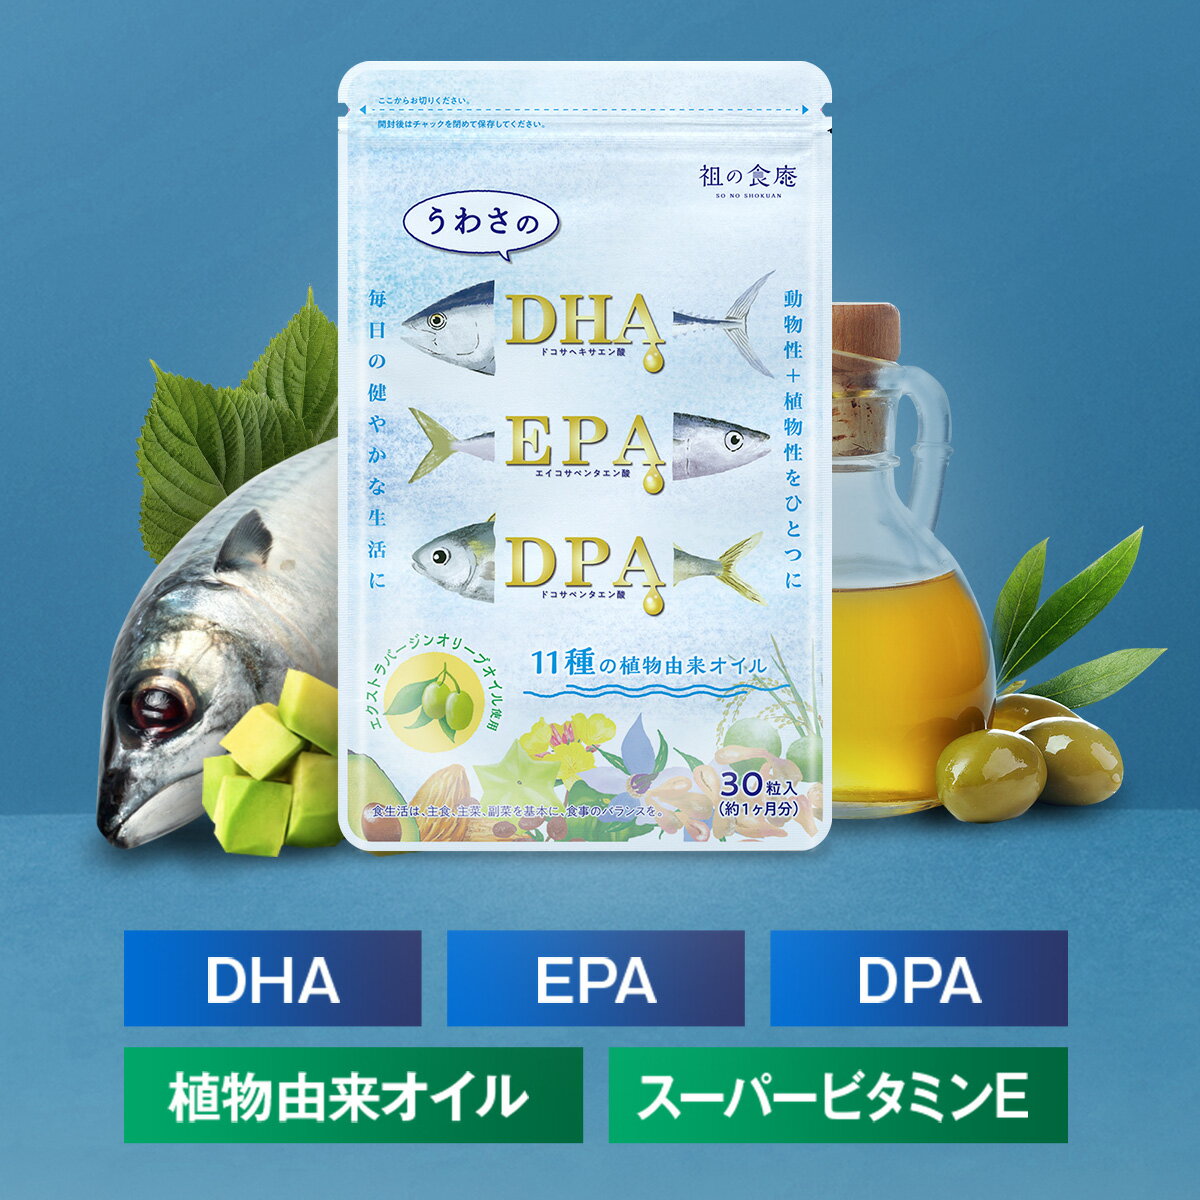 Asahi ディアナチュラ DHA with イチョウ葉 240粒 【ボトルタイプ】